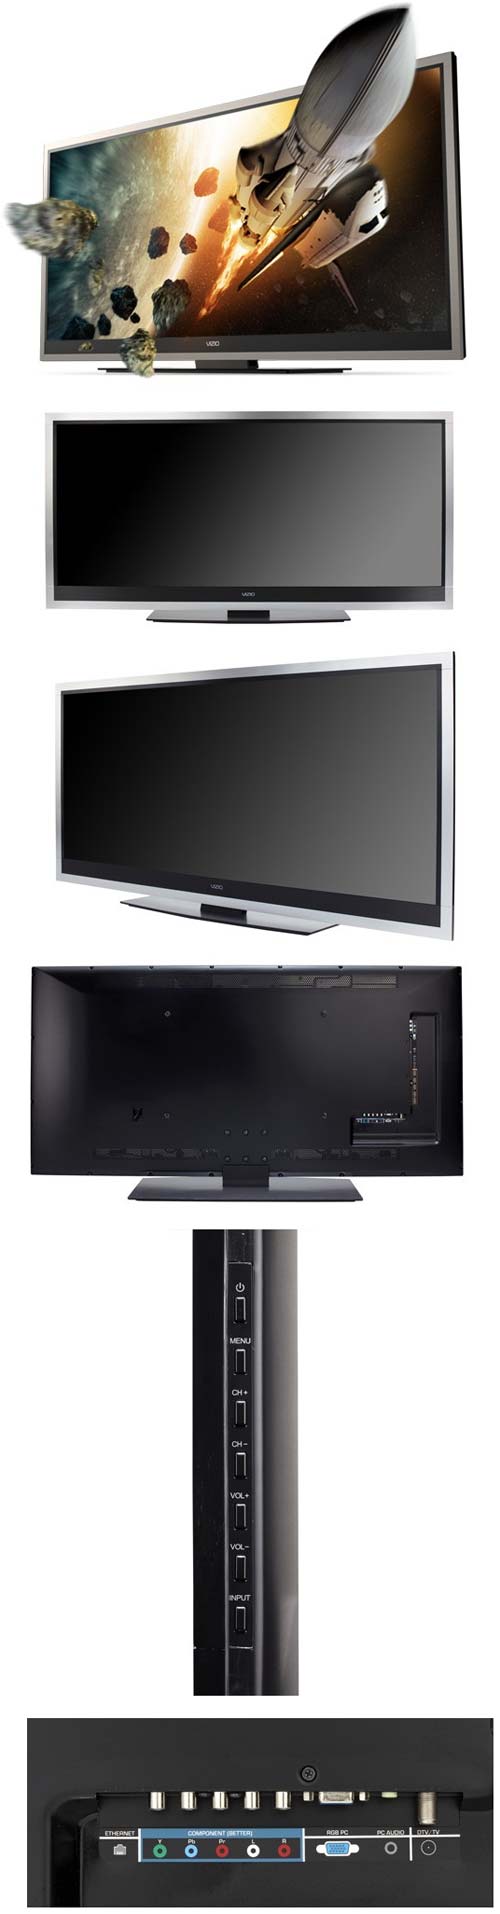 Vizio предлагает поистине широкоформатный телевизор XVT3D580CM